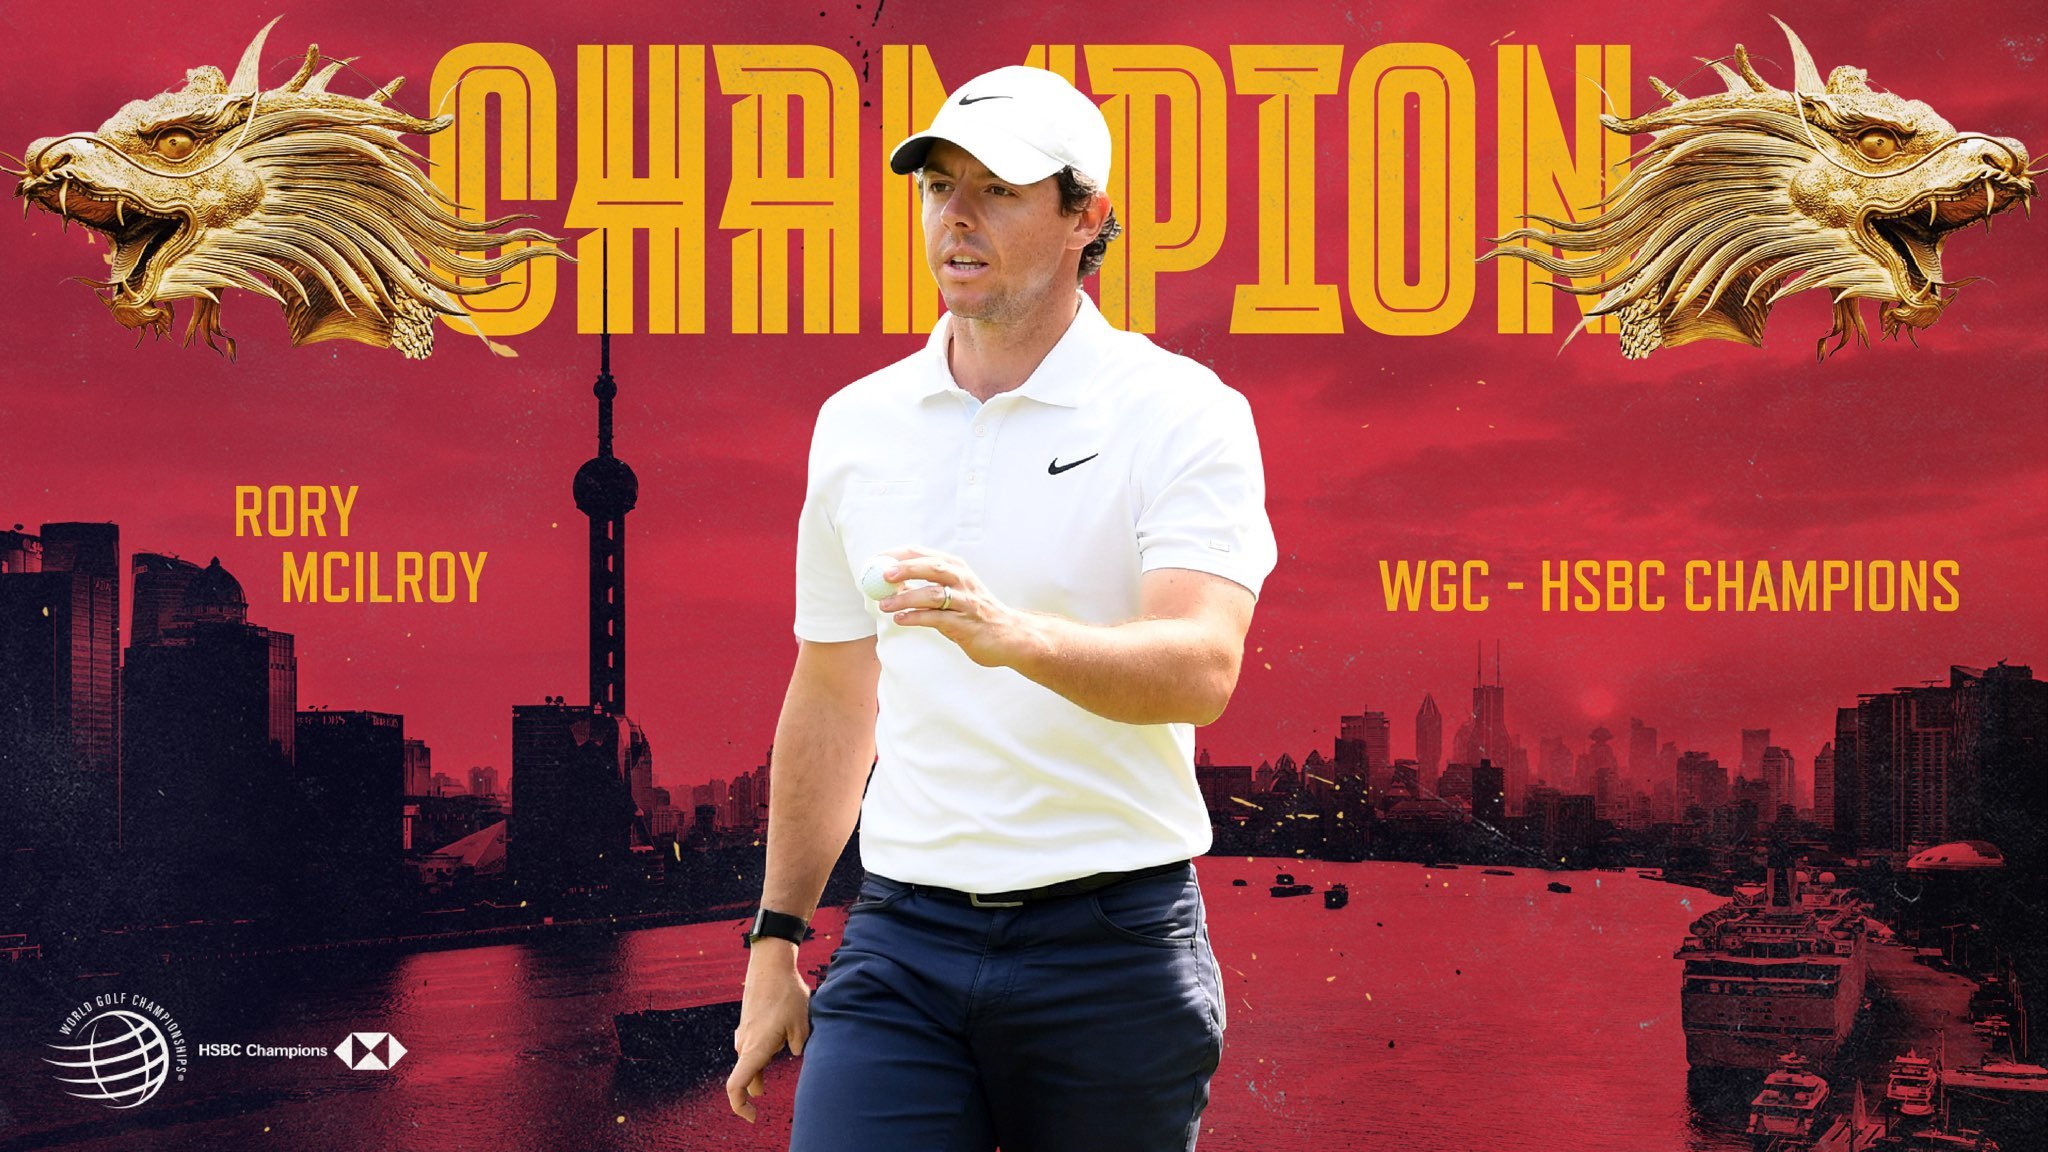 Thắng nhà ĐKVĐ ở play-off, Rory McIlroy đăng quang WGC-HSBC Champions 2019